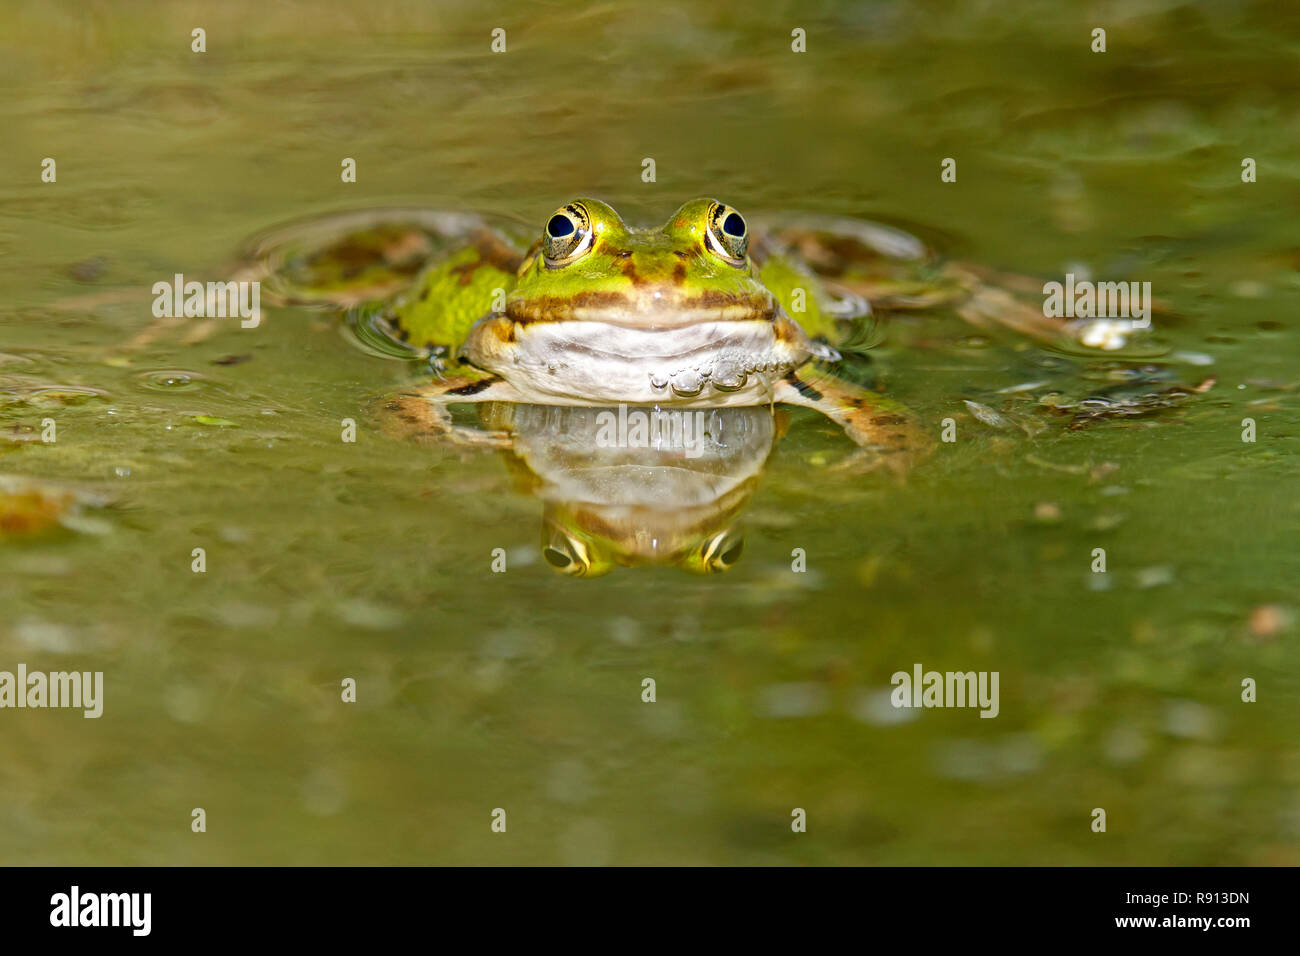 Acqua comune (rana Rana kl. esculenta) nuotare in un laghetto, la fauna selvatica, Germania Foto Stock